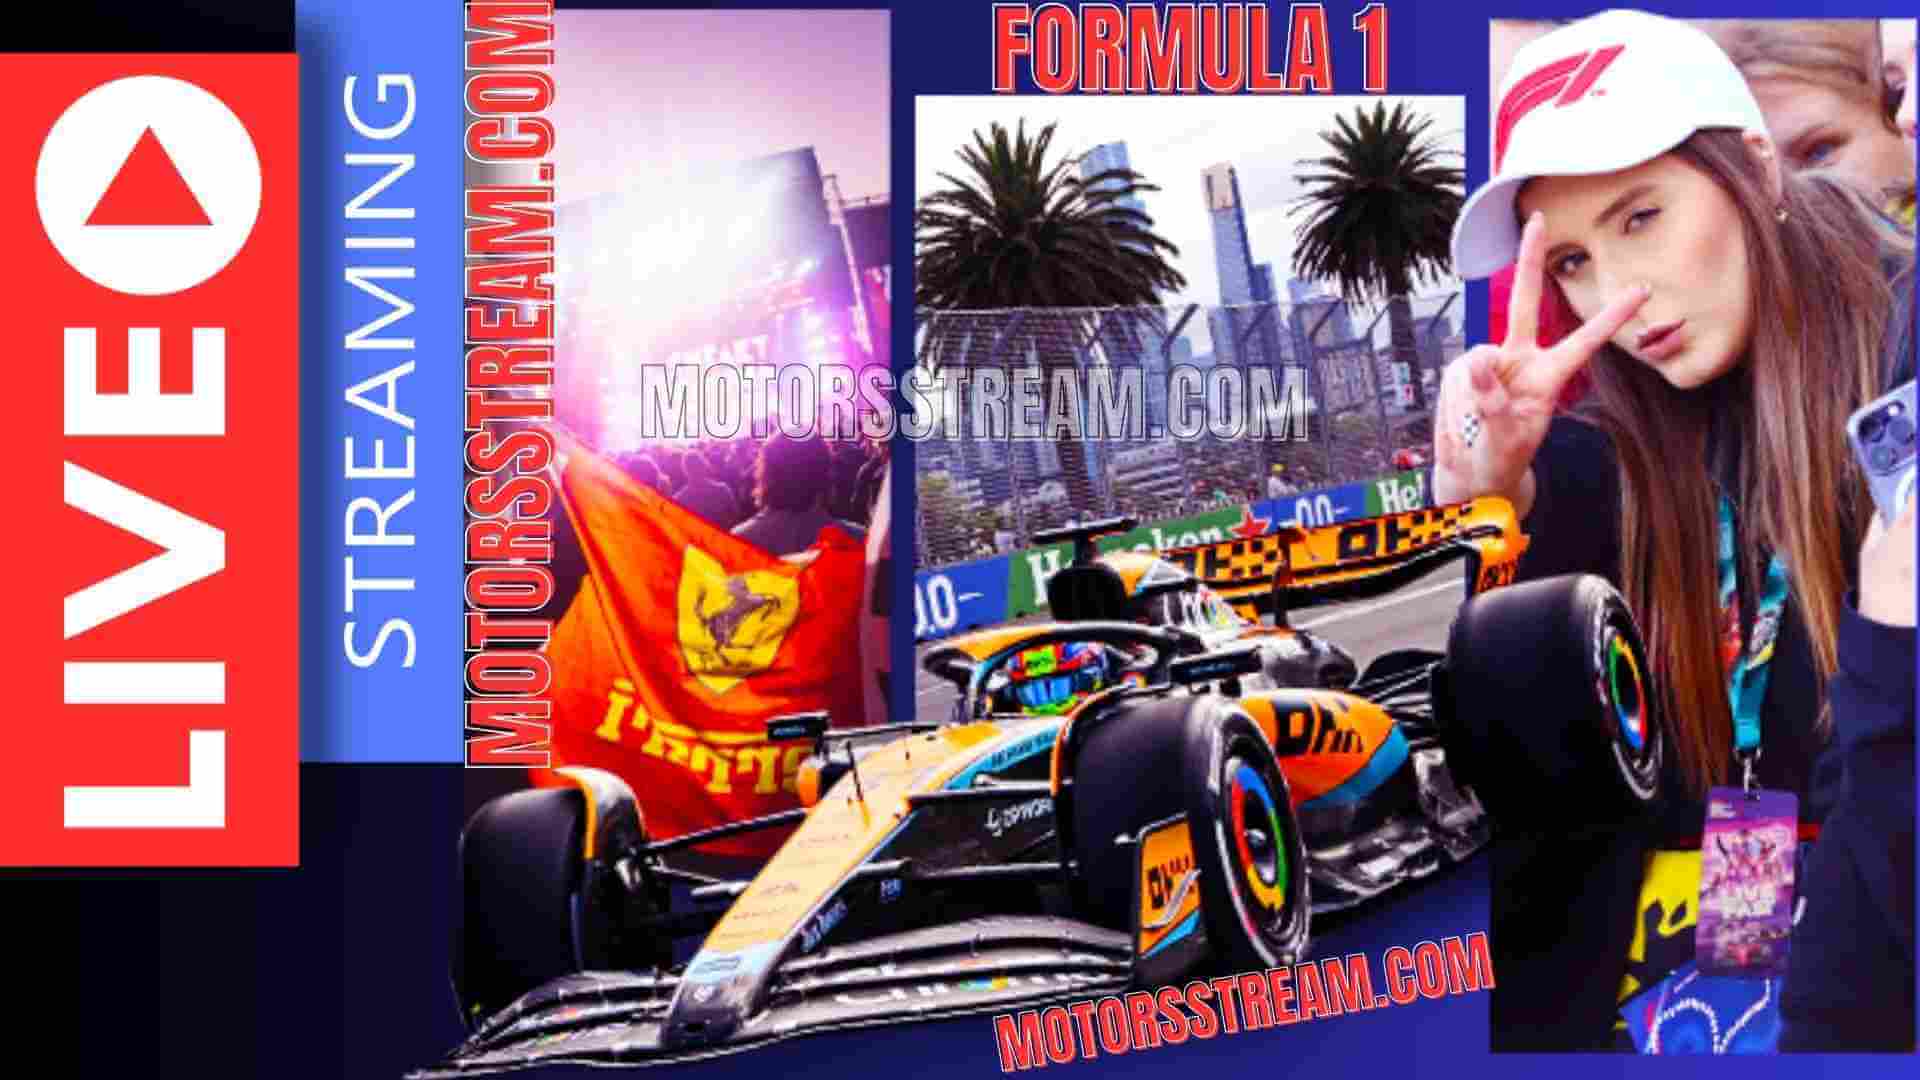 Formula 1 Live Stream